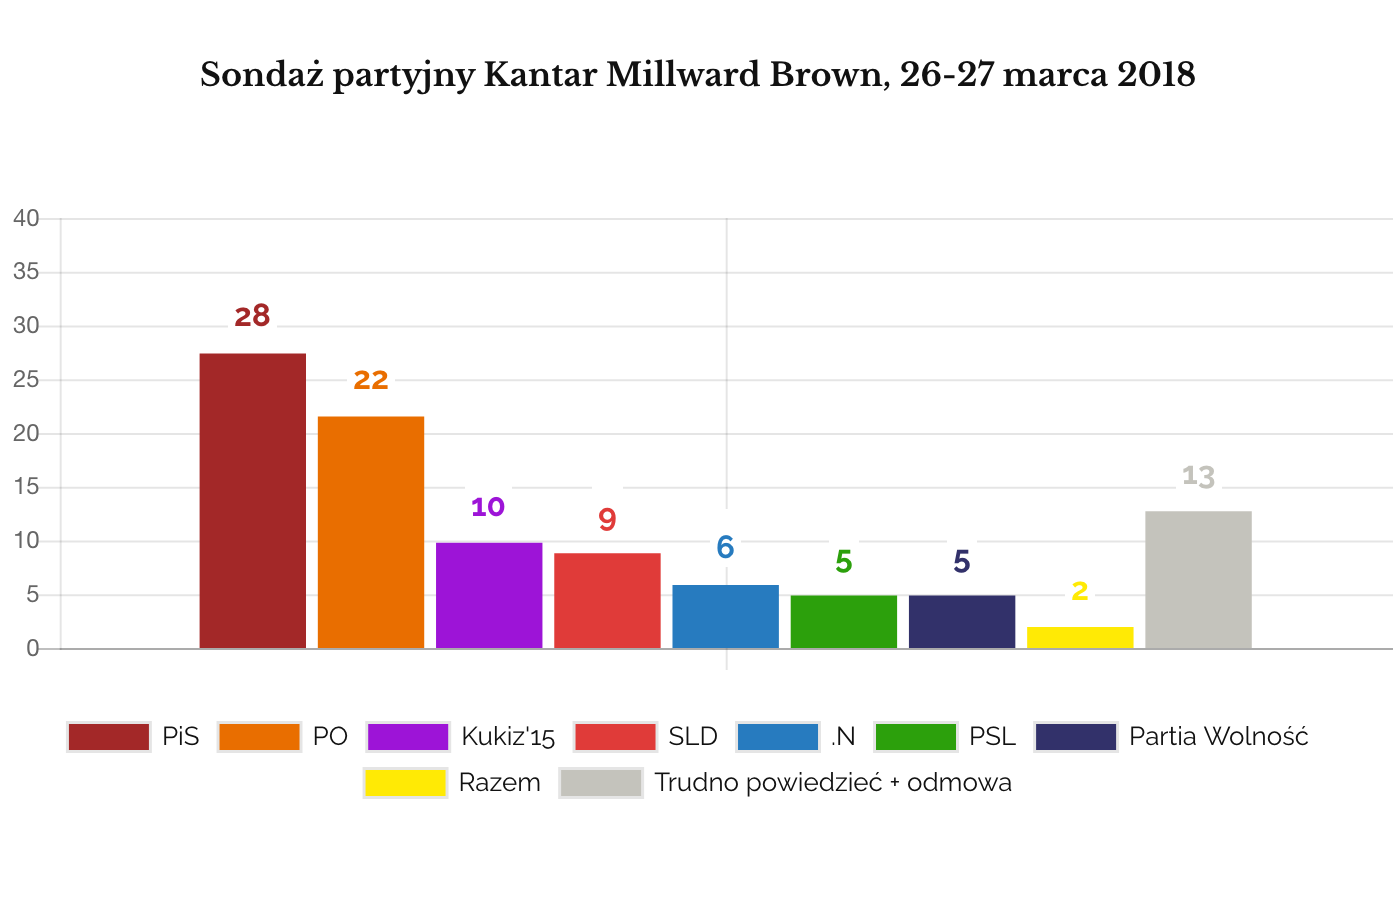 Millward Brown marzec 2018 sondaż partyjny